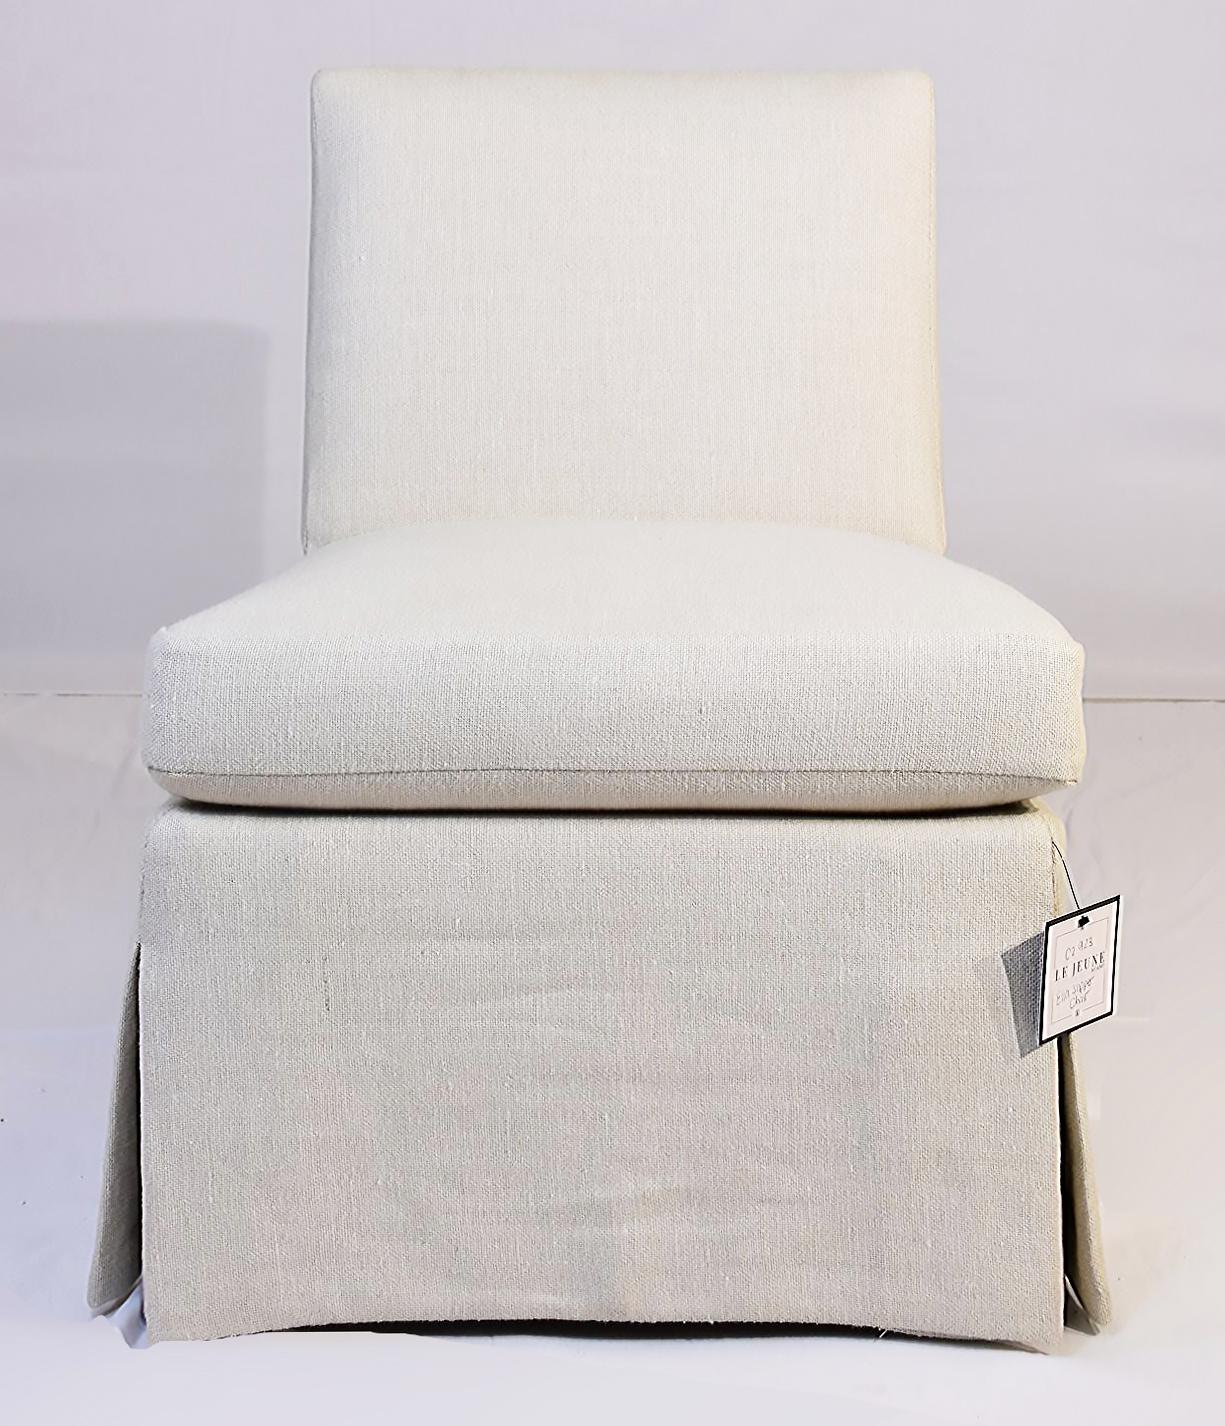 Le Jeune Upholstery Ella Slipper Chair Floor Sample in Ivory For Sale 3